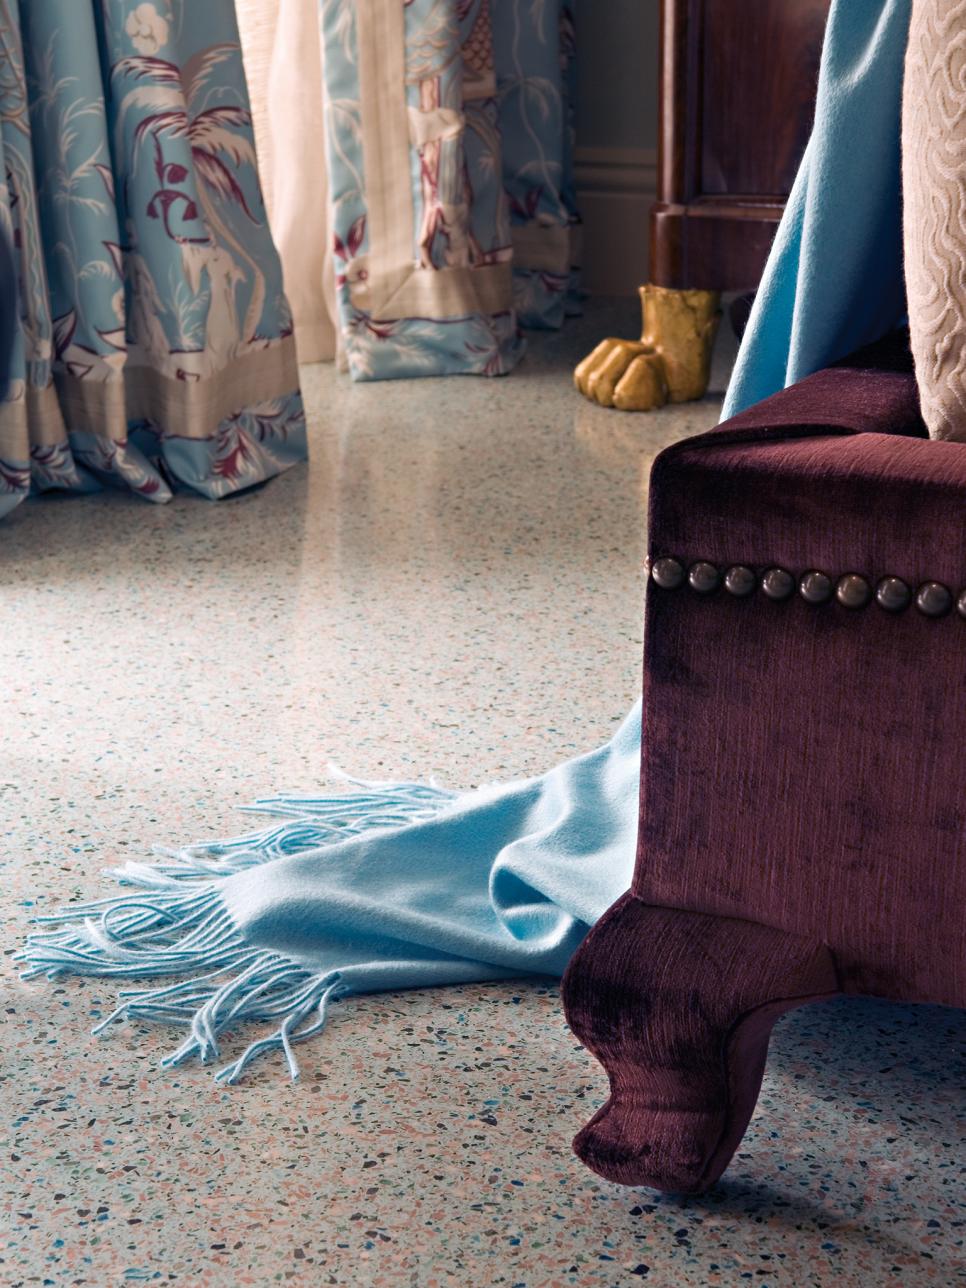 Blue Throw & Leg of Upholstered Platform Bed on Speckled Floor